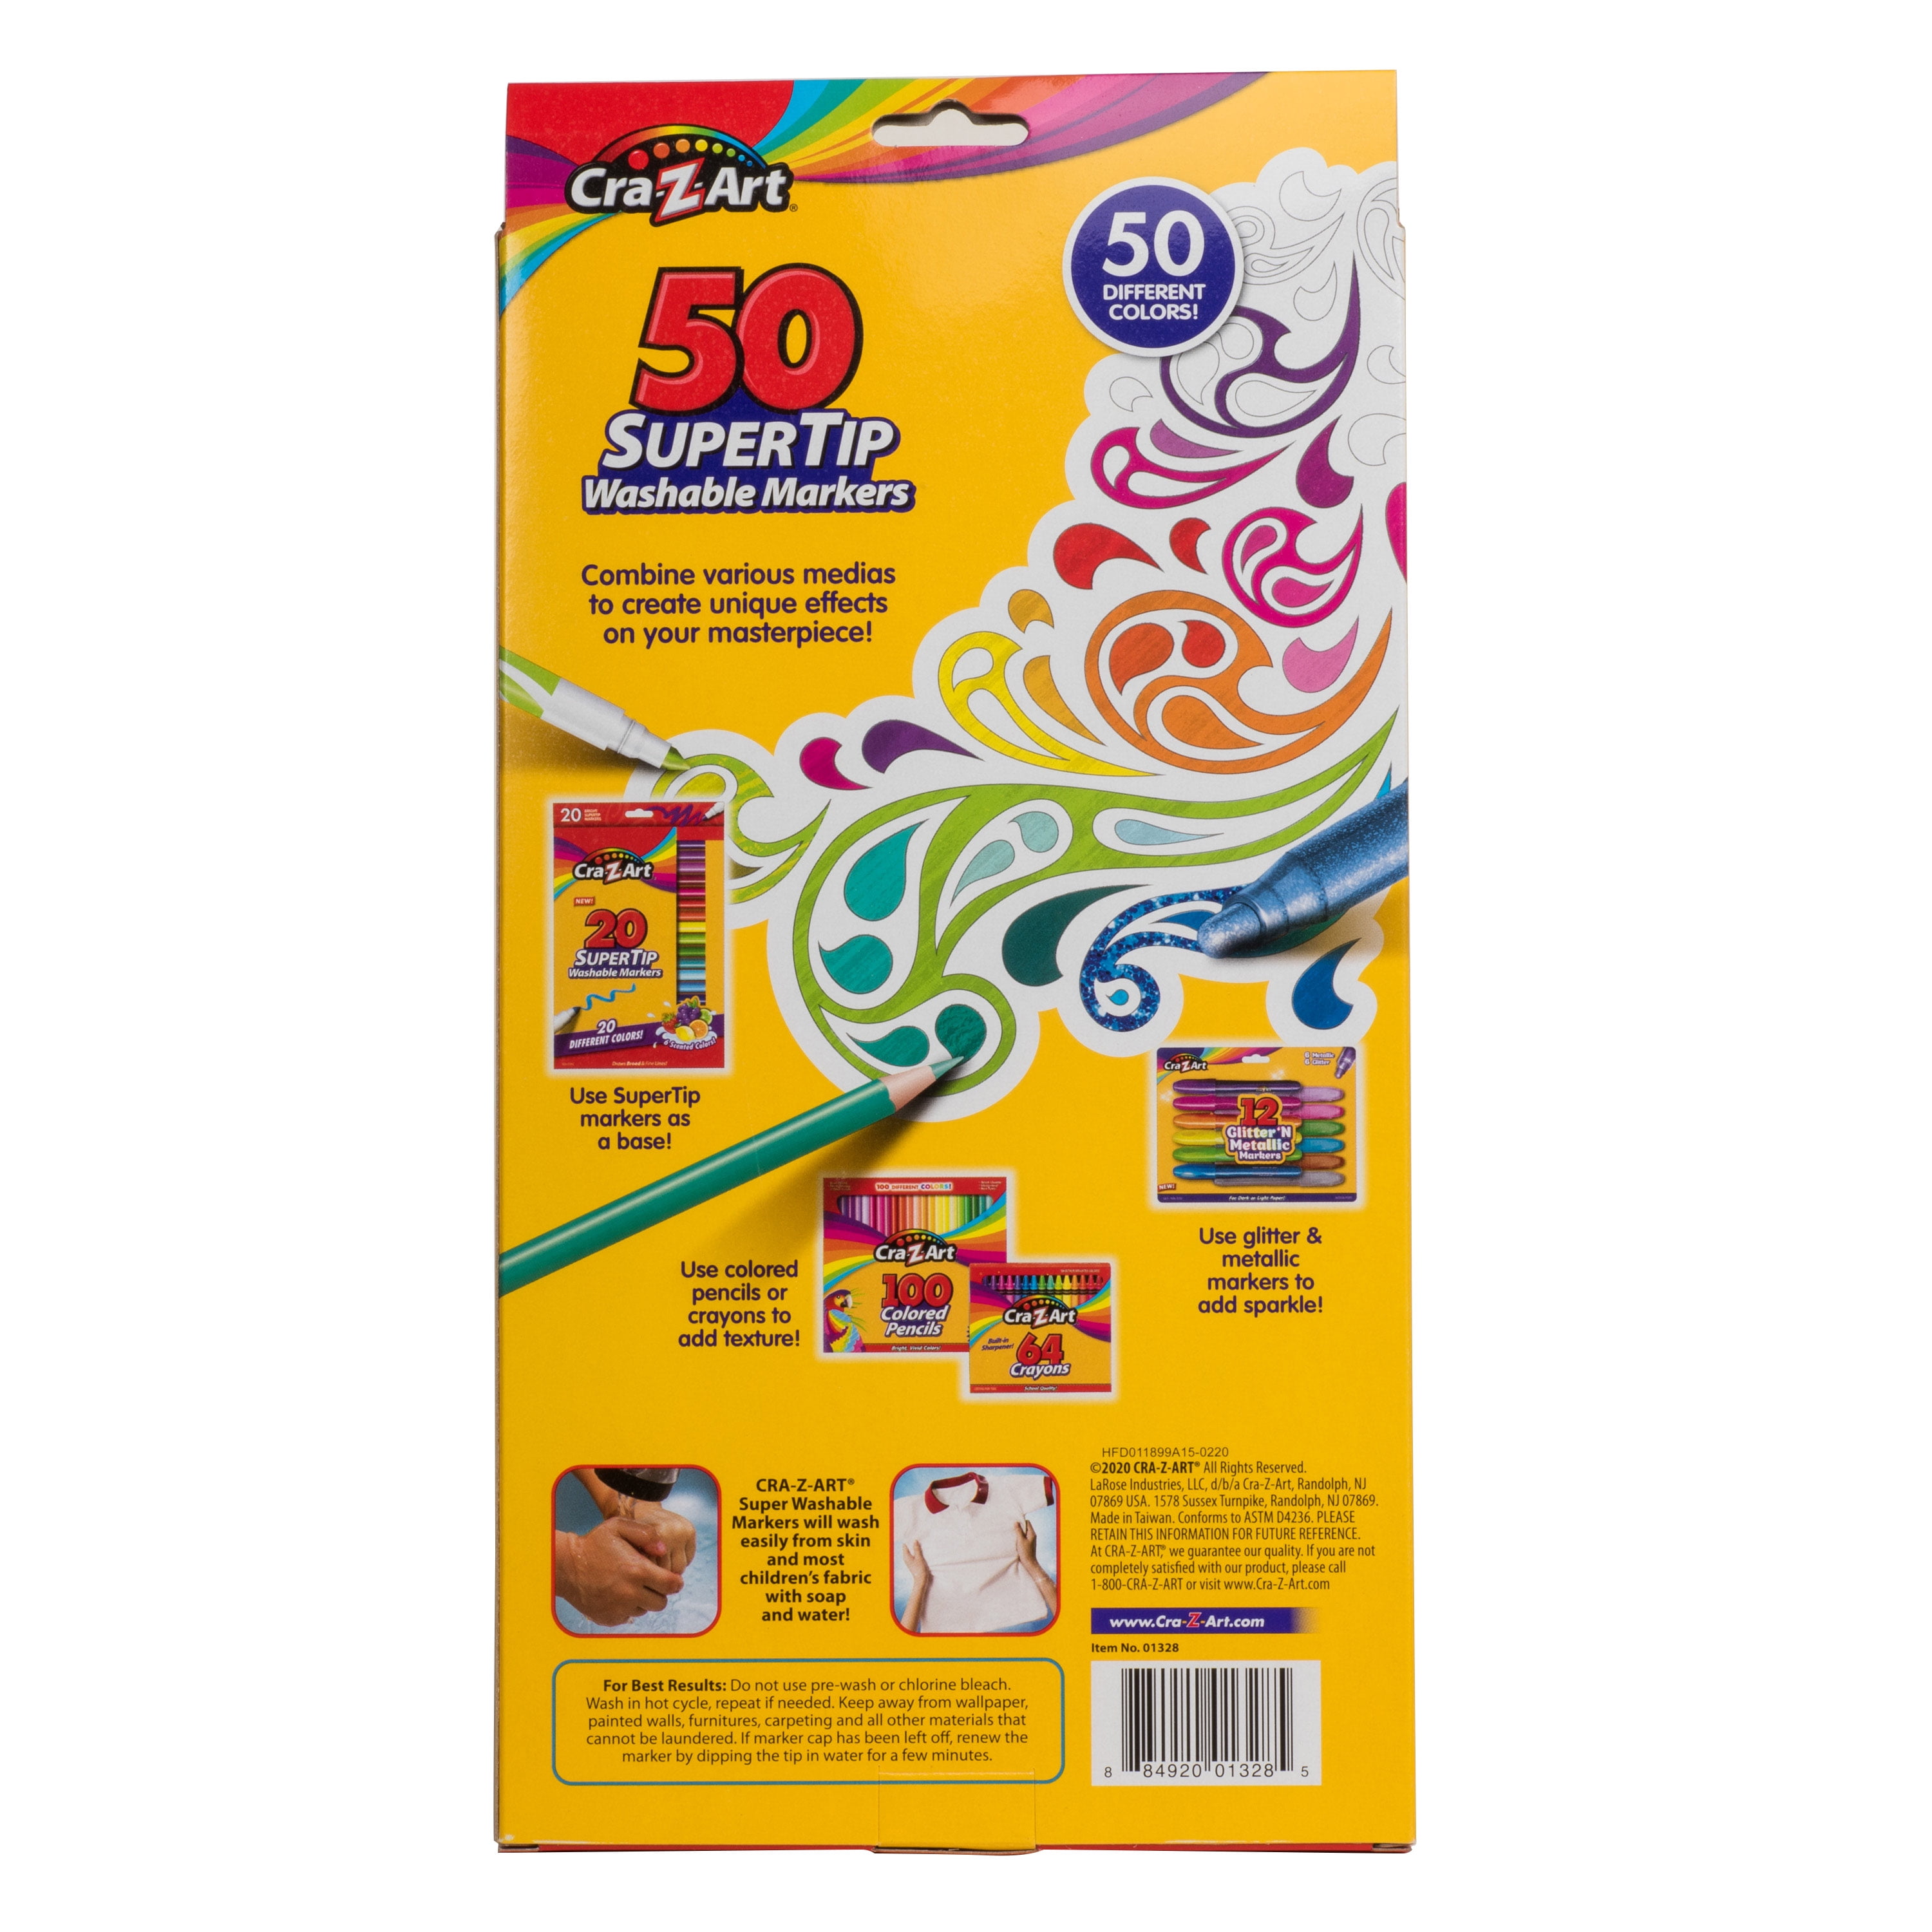 Cra-Z-Art Bold & Brites Multicolor Super Washable Markers, 10